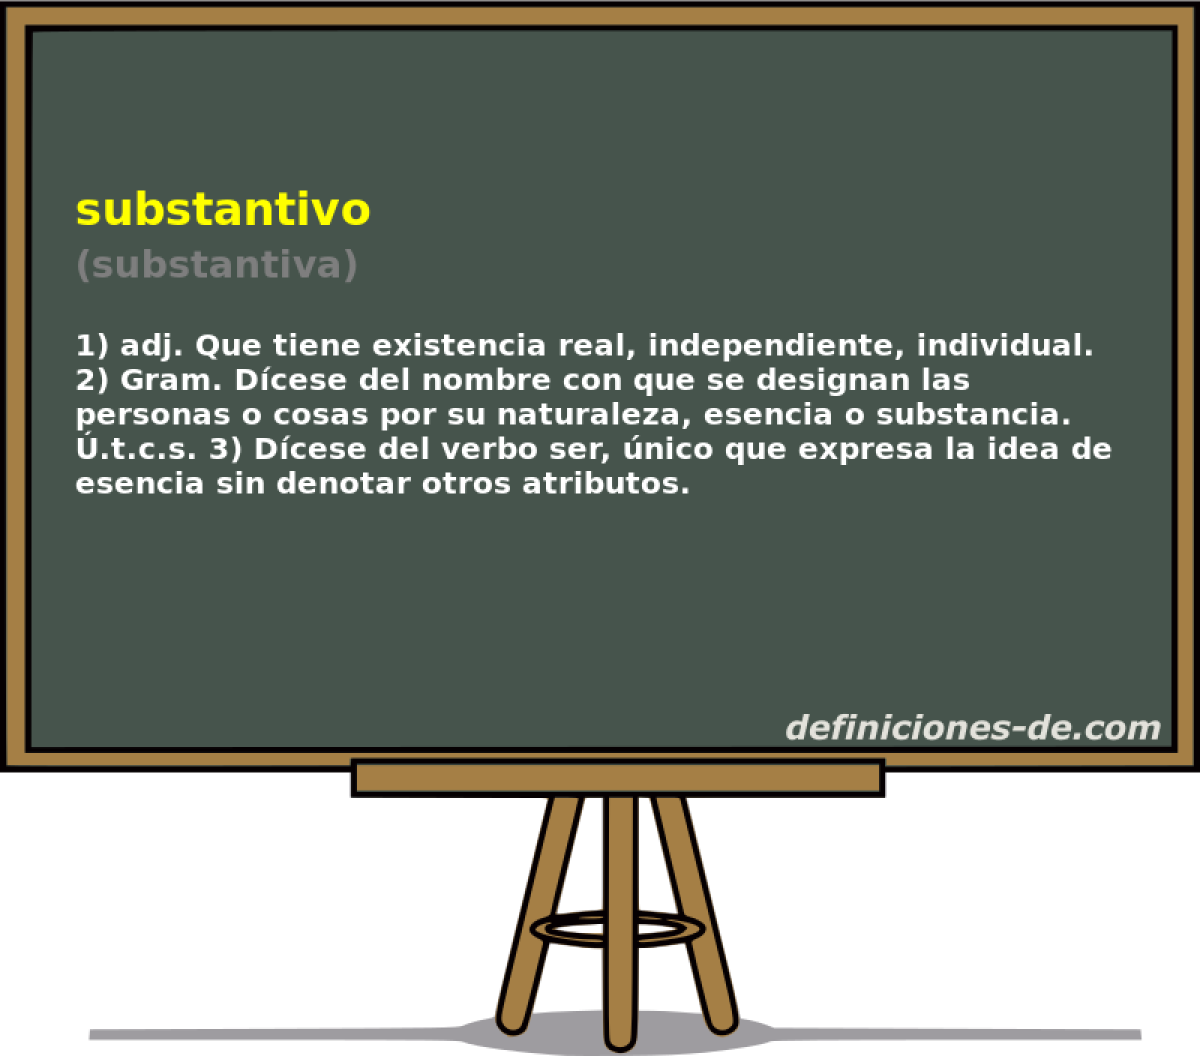 substantivo (substantiva)